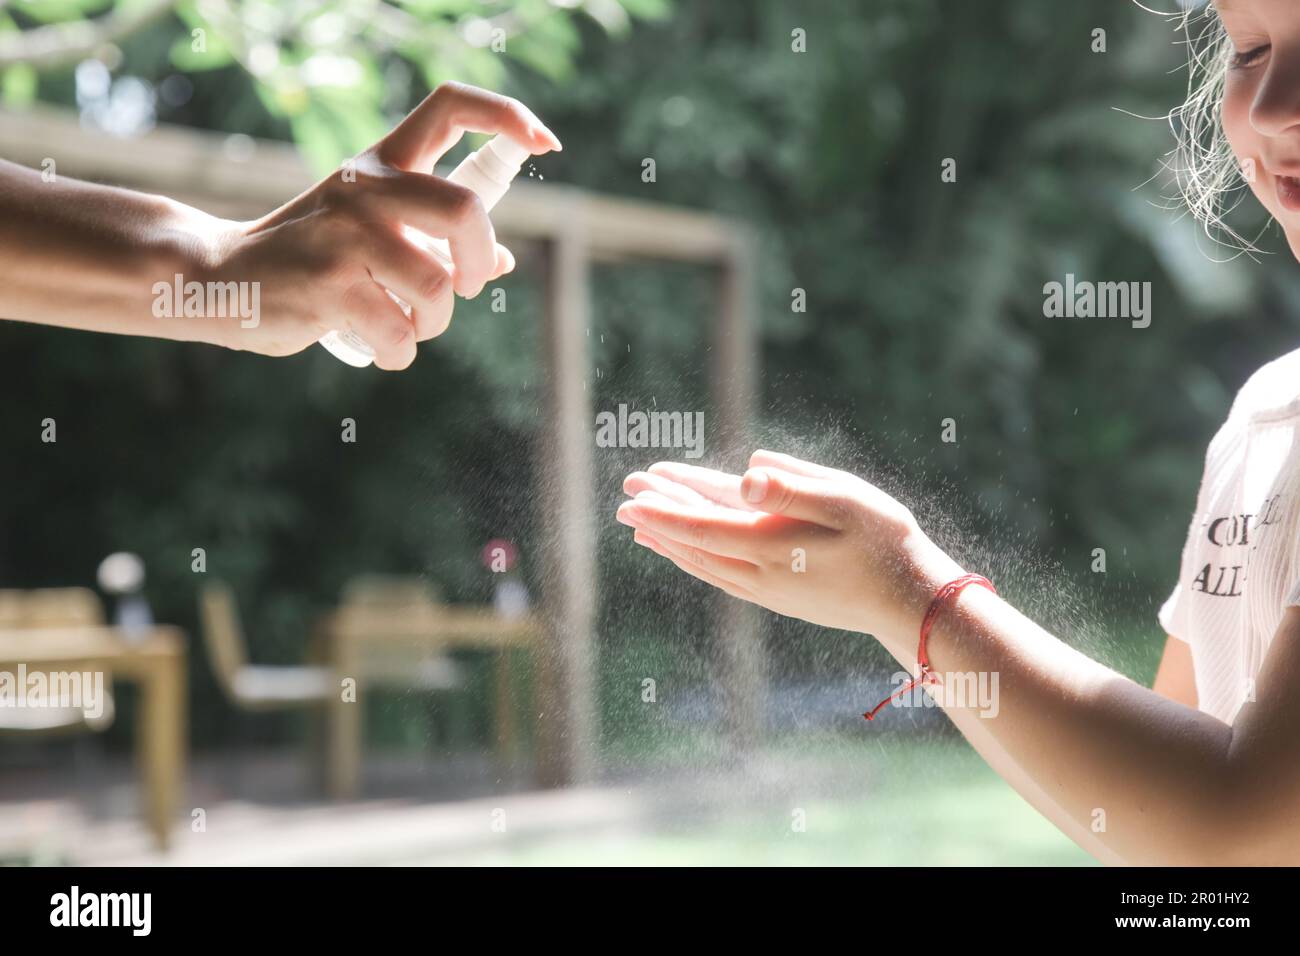 Mère appliquant un désinfectant pour les mains ou un spray répulsif anti-moustiques sur la main de son enfant Banque D'Images